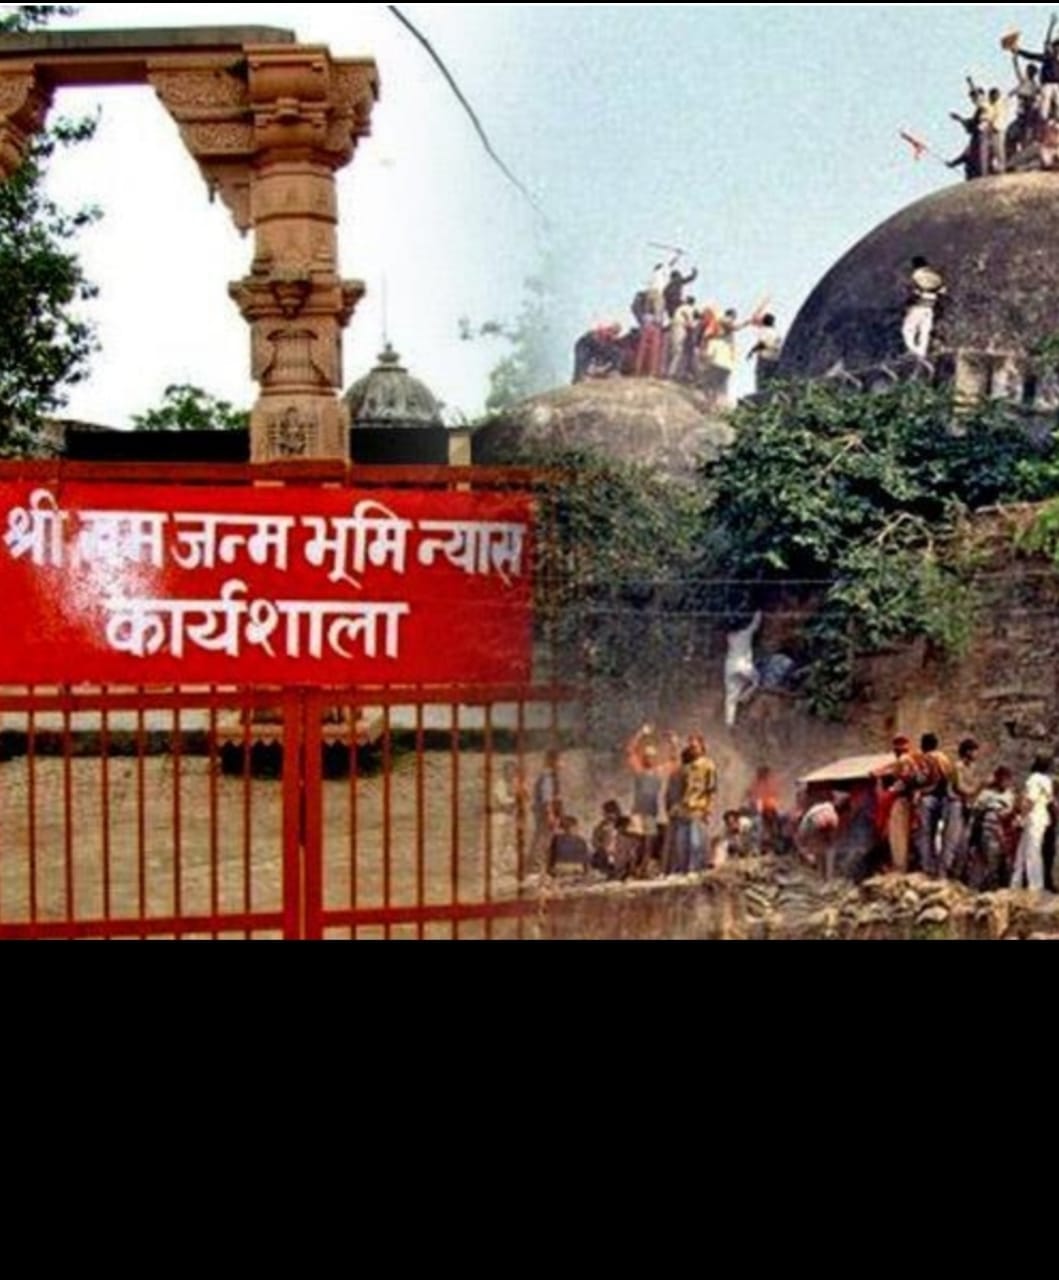 राम मंदिर बाबरी मस्जिद के फैसले पर सुरक्षा की न हो अनदेखी